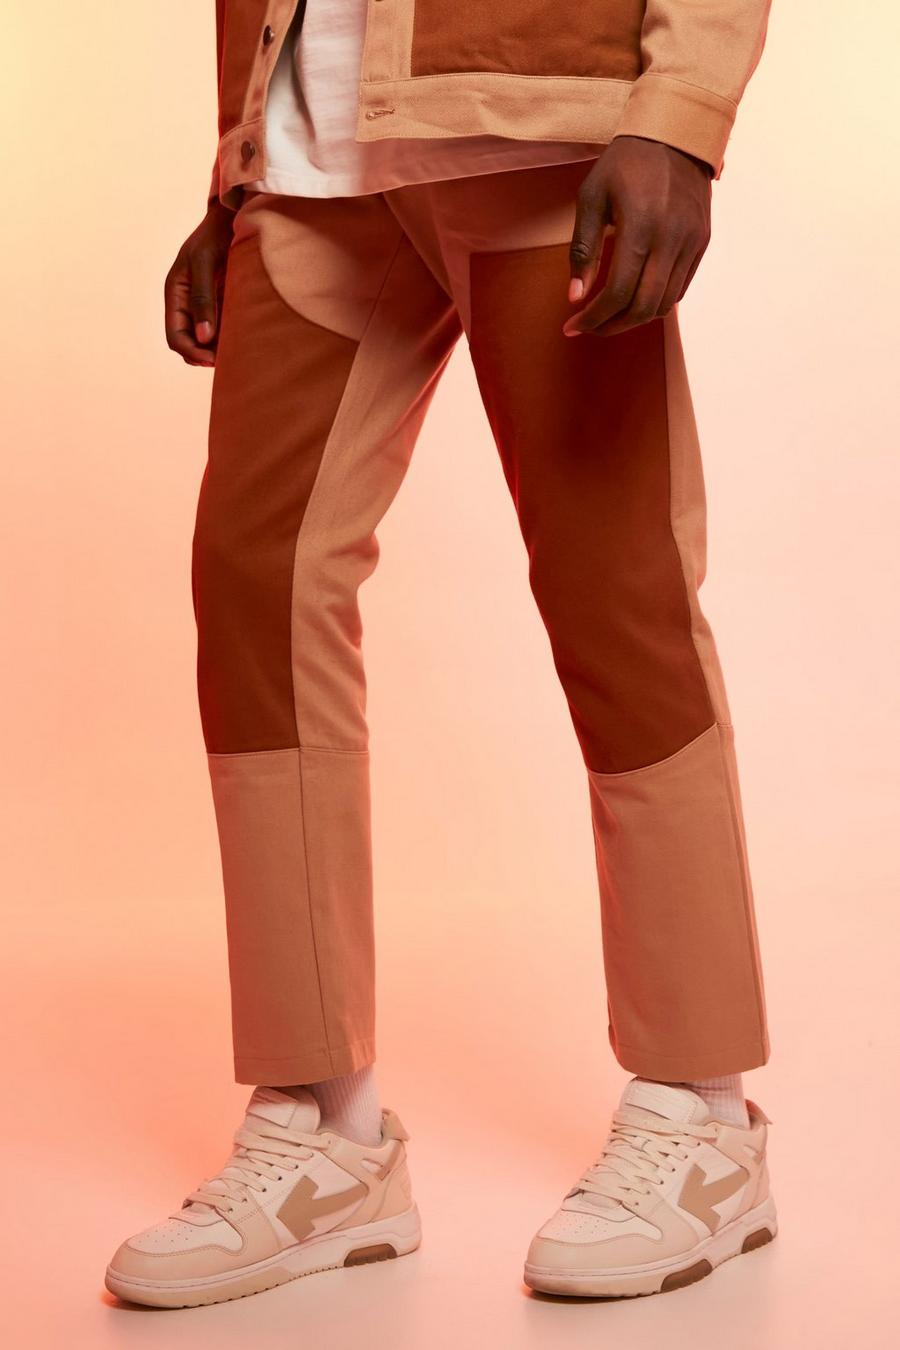 חום שזוף marrón מכנסיים מבד עבה בגזרת רגל ישרה עם פאנל פועלים